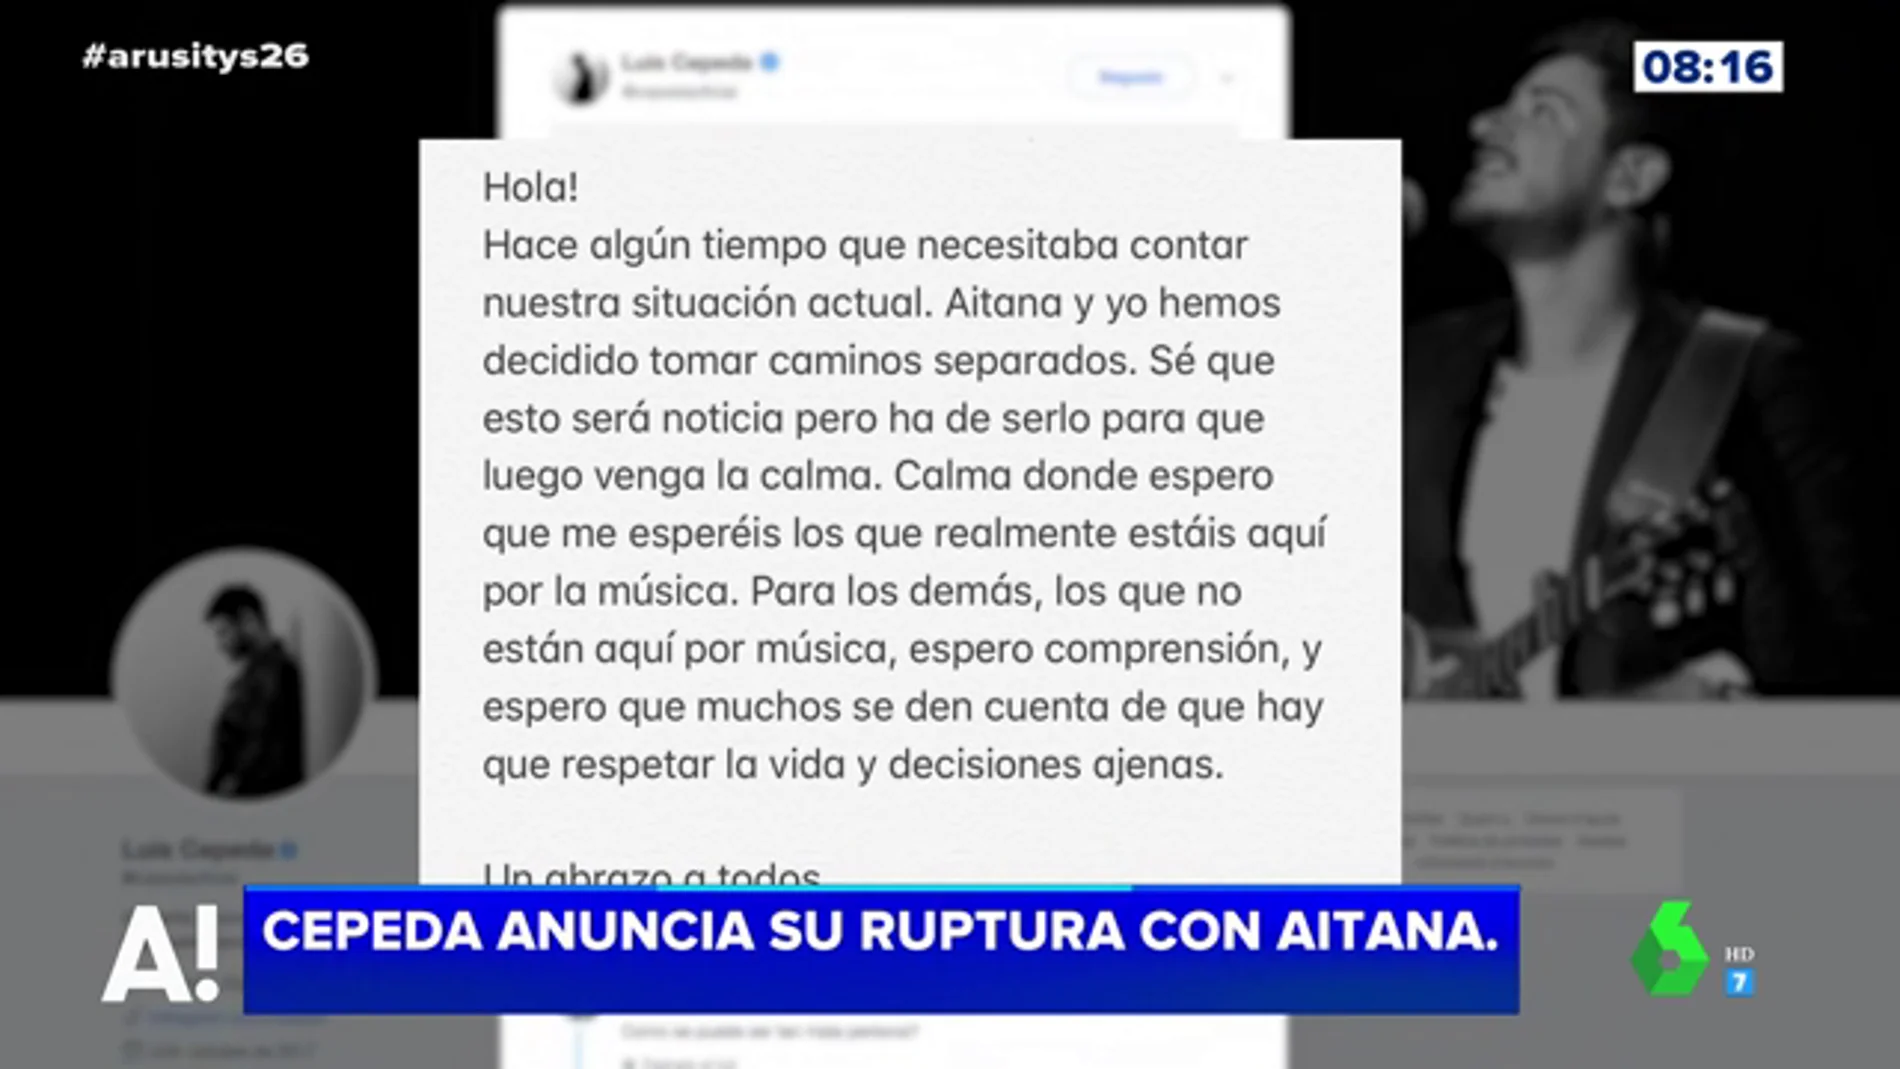 Cepeda y Aitana anuncia en Twitter que "toman caminos separados"